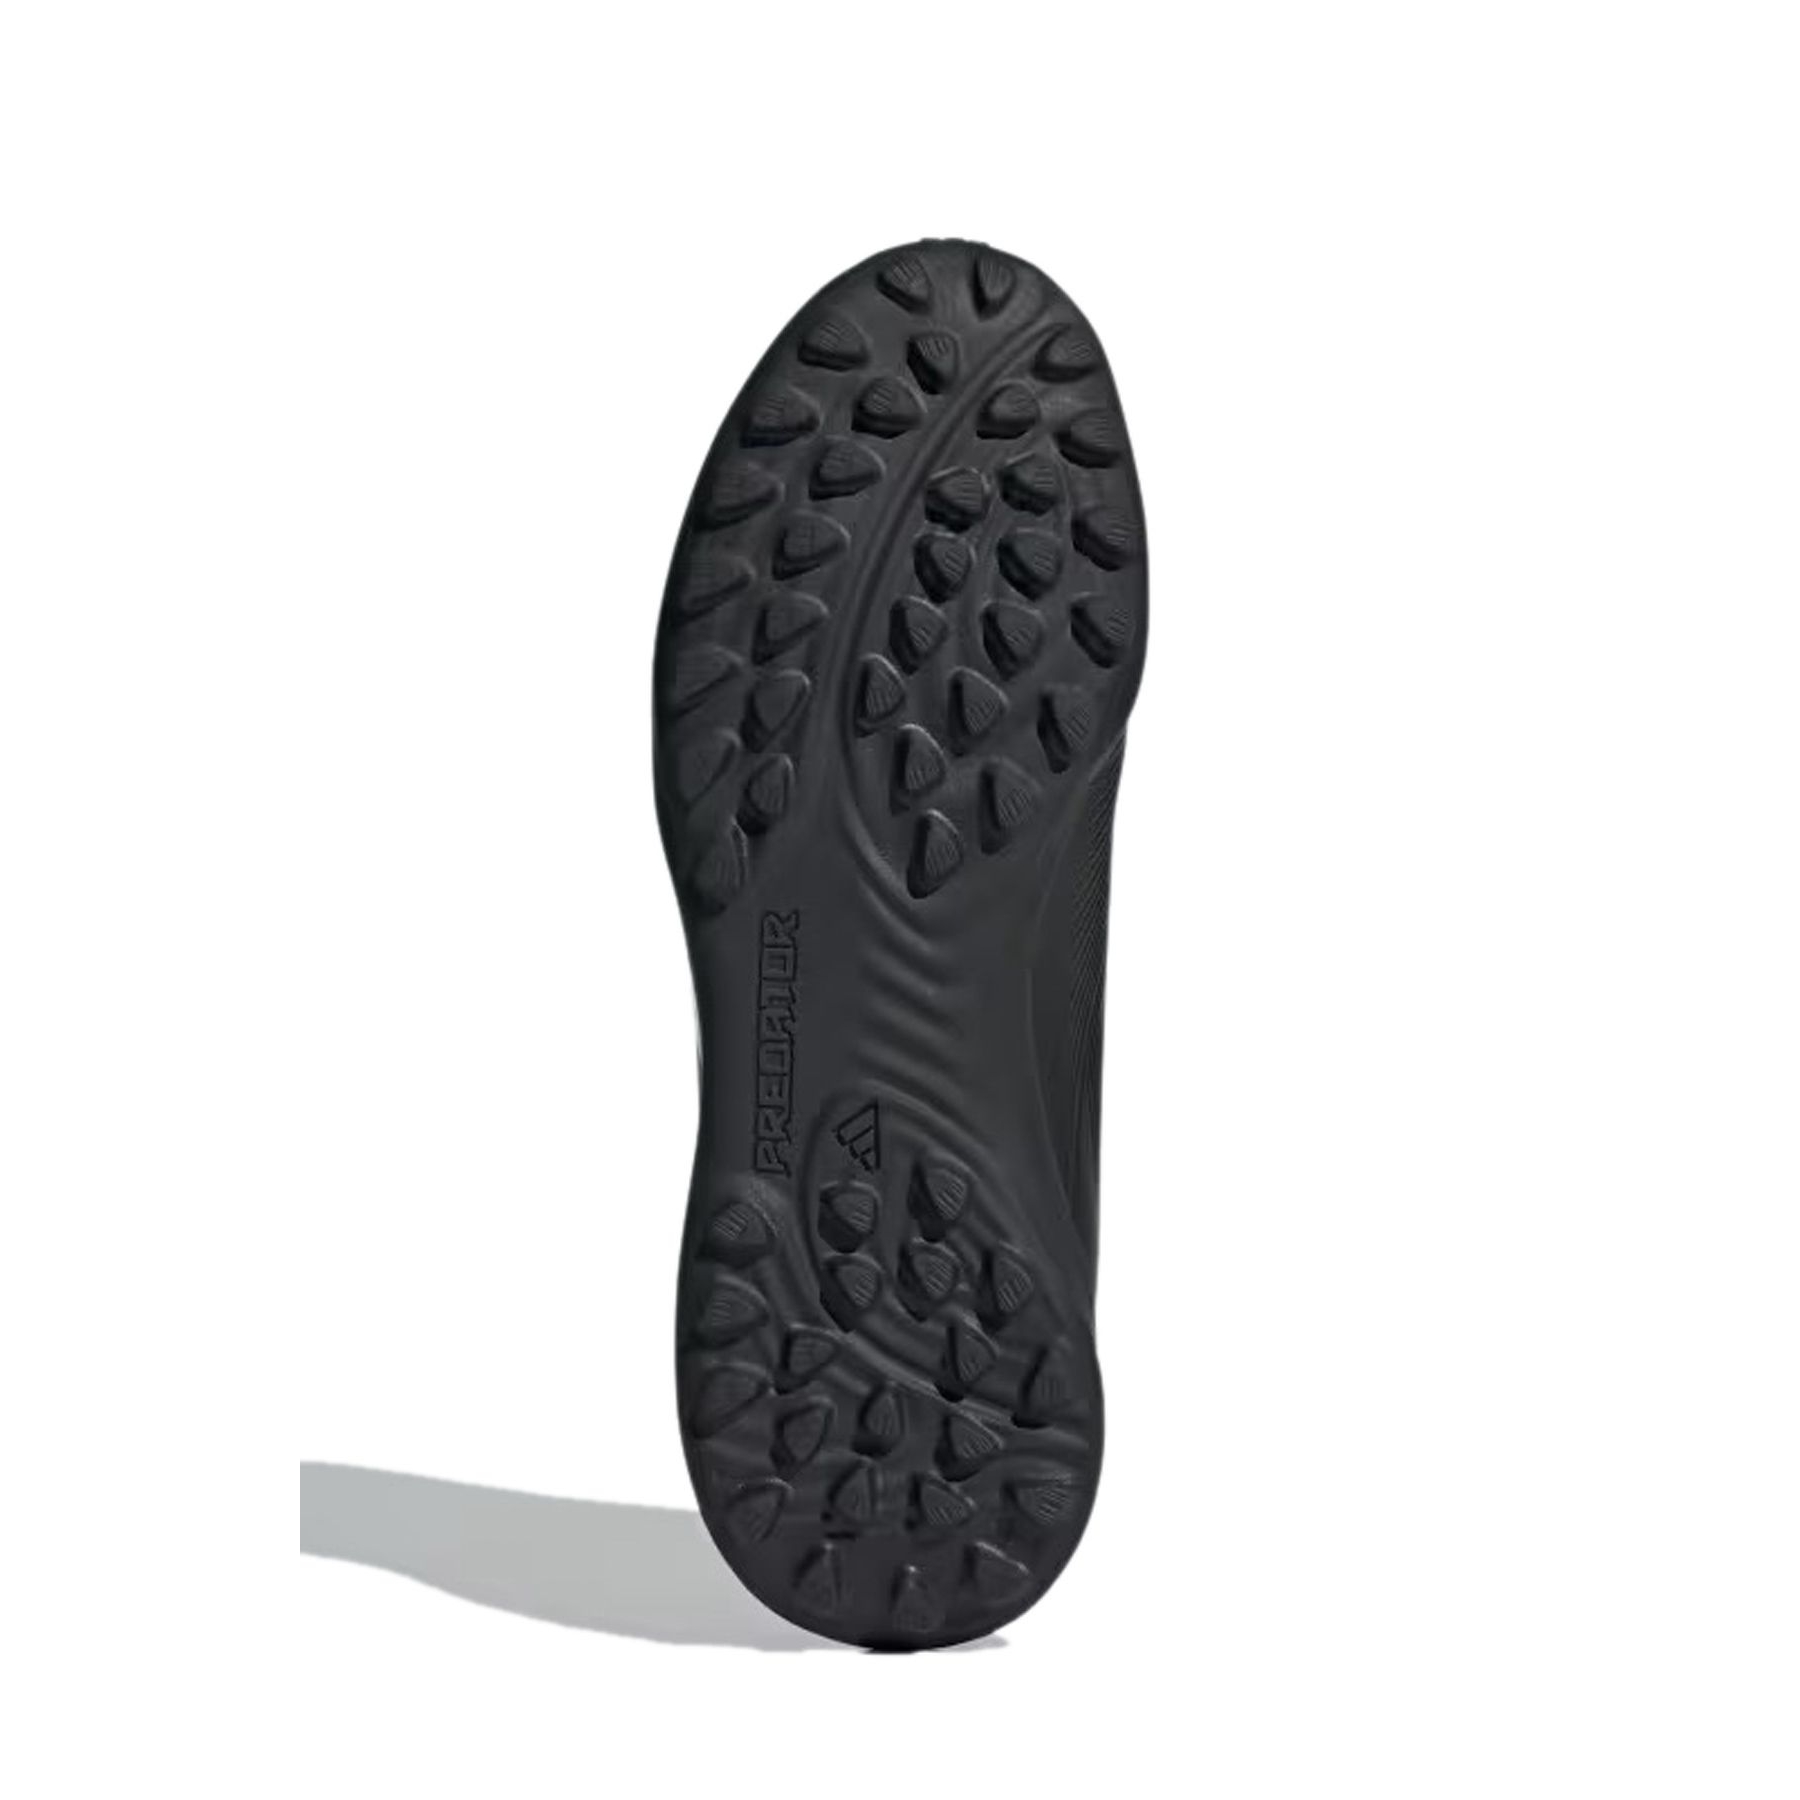 adidas Predator League Çocuk Siyah Halı Saha Ayakkabısı (IG5442)